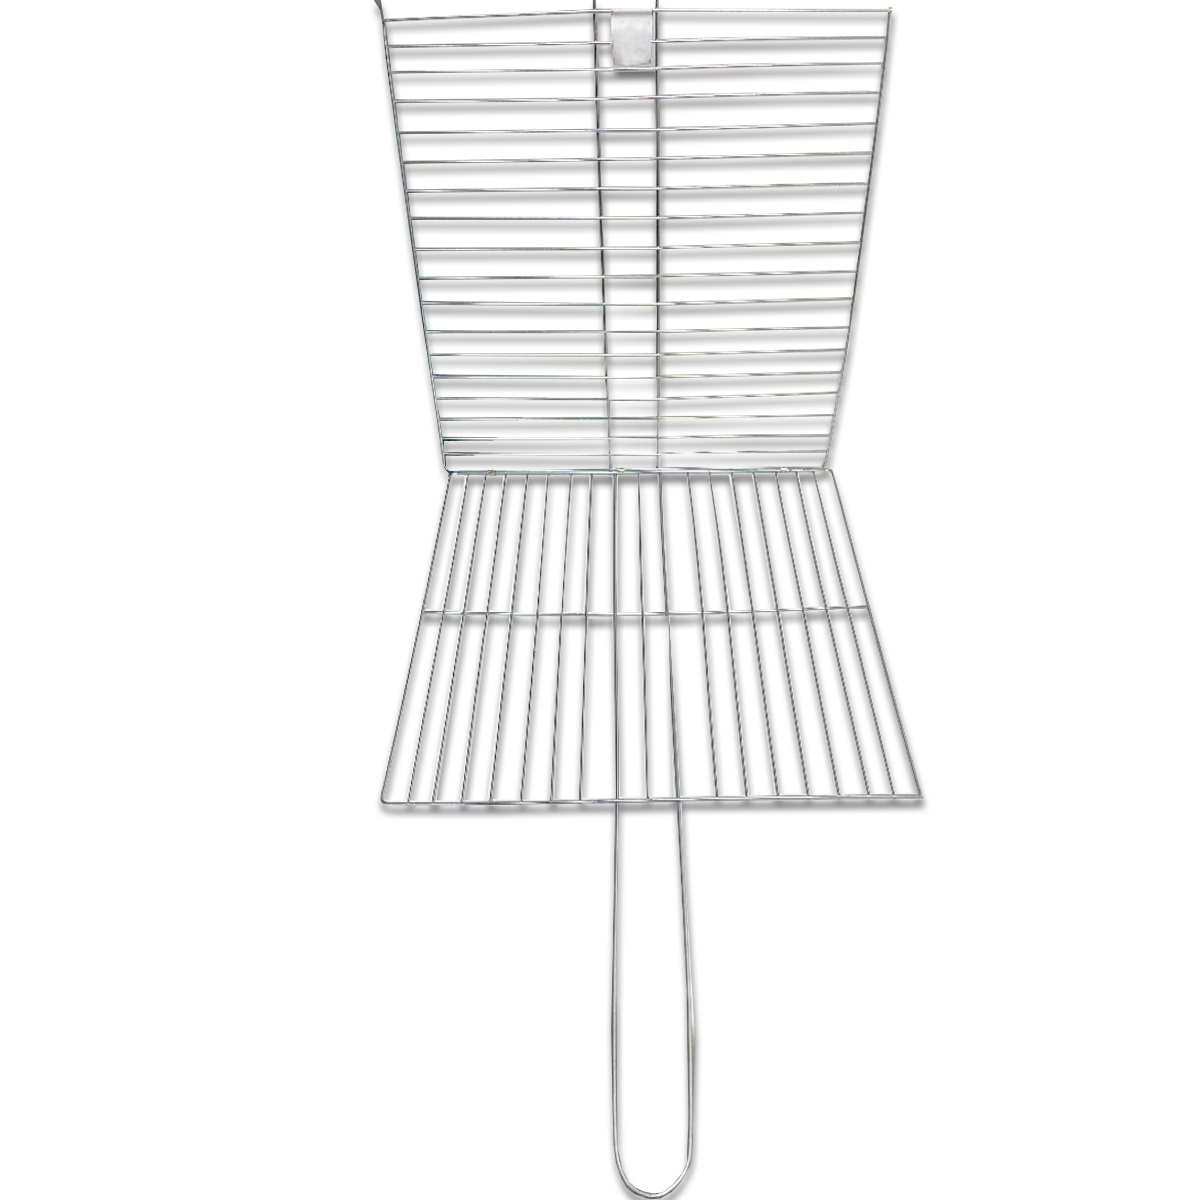 35x35cm Grilling Basket Barbecue Tool Fish Grilling/Pescado Zarandeado